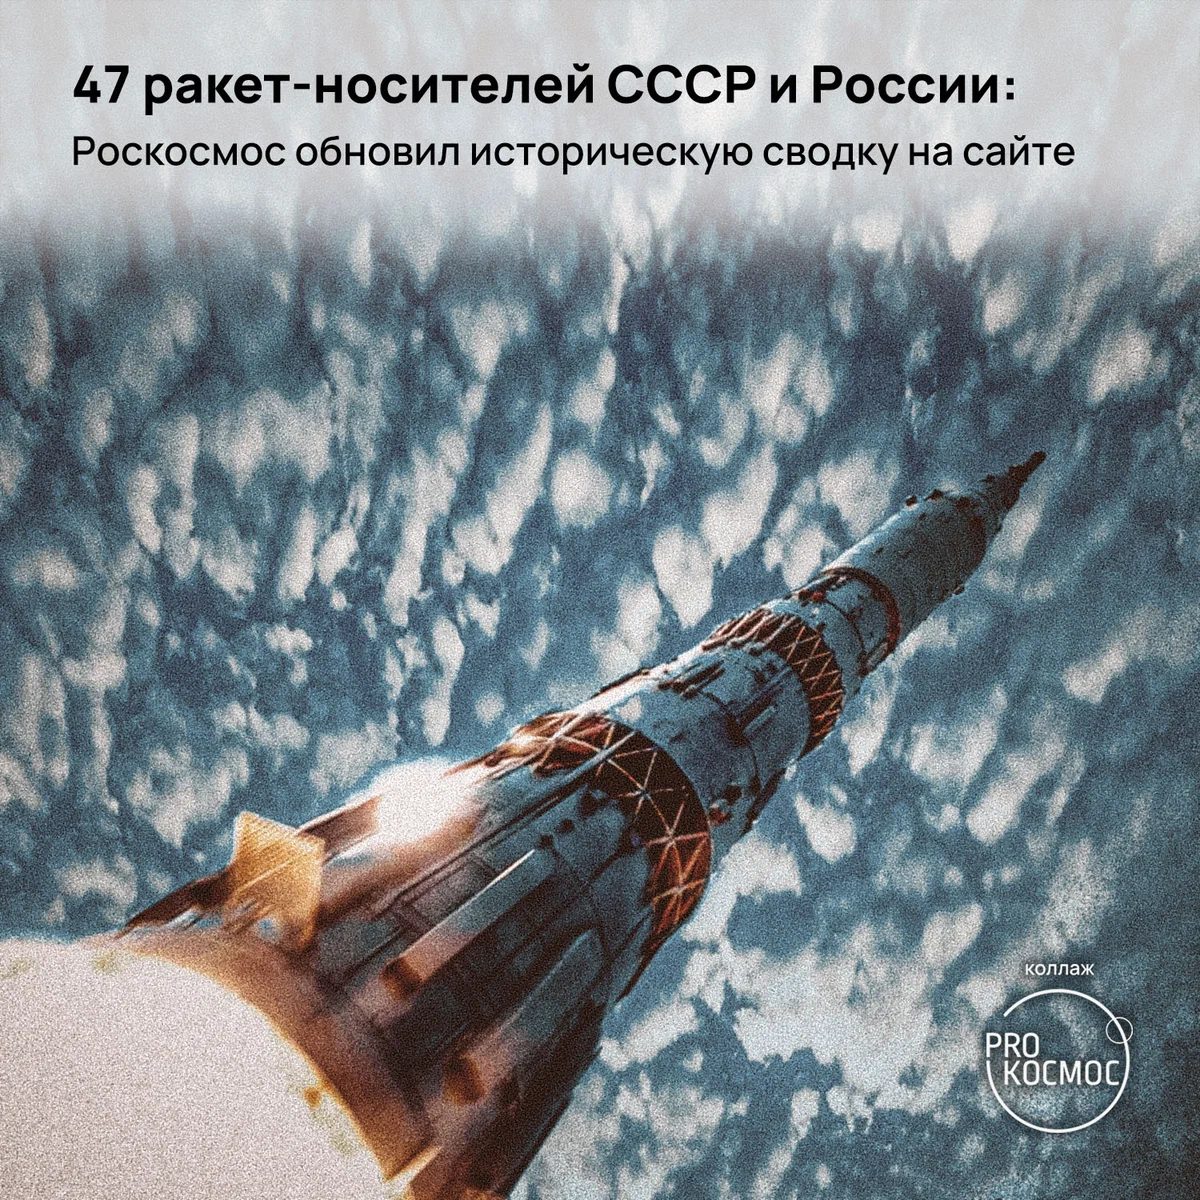 47 ракет-носителей СССР и России: Роскосмос обновил историческую сводку на сайте height=1200px width=1200px